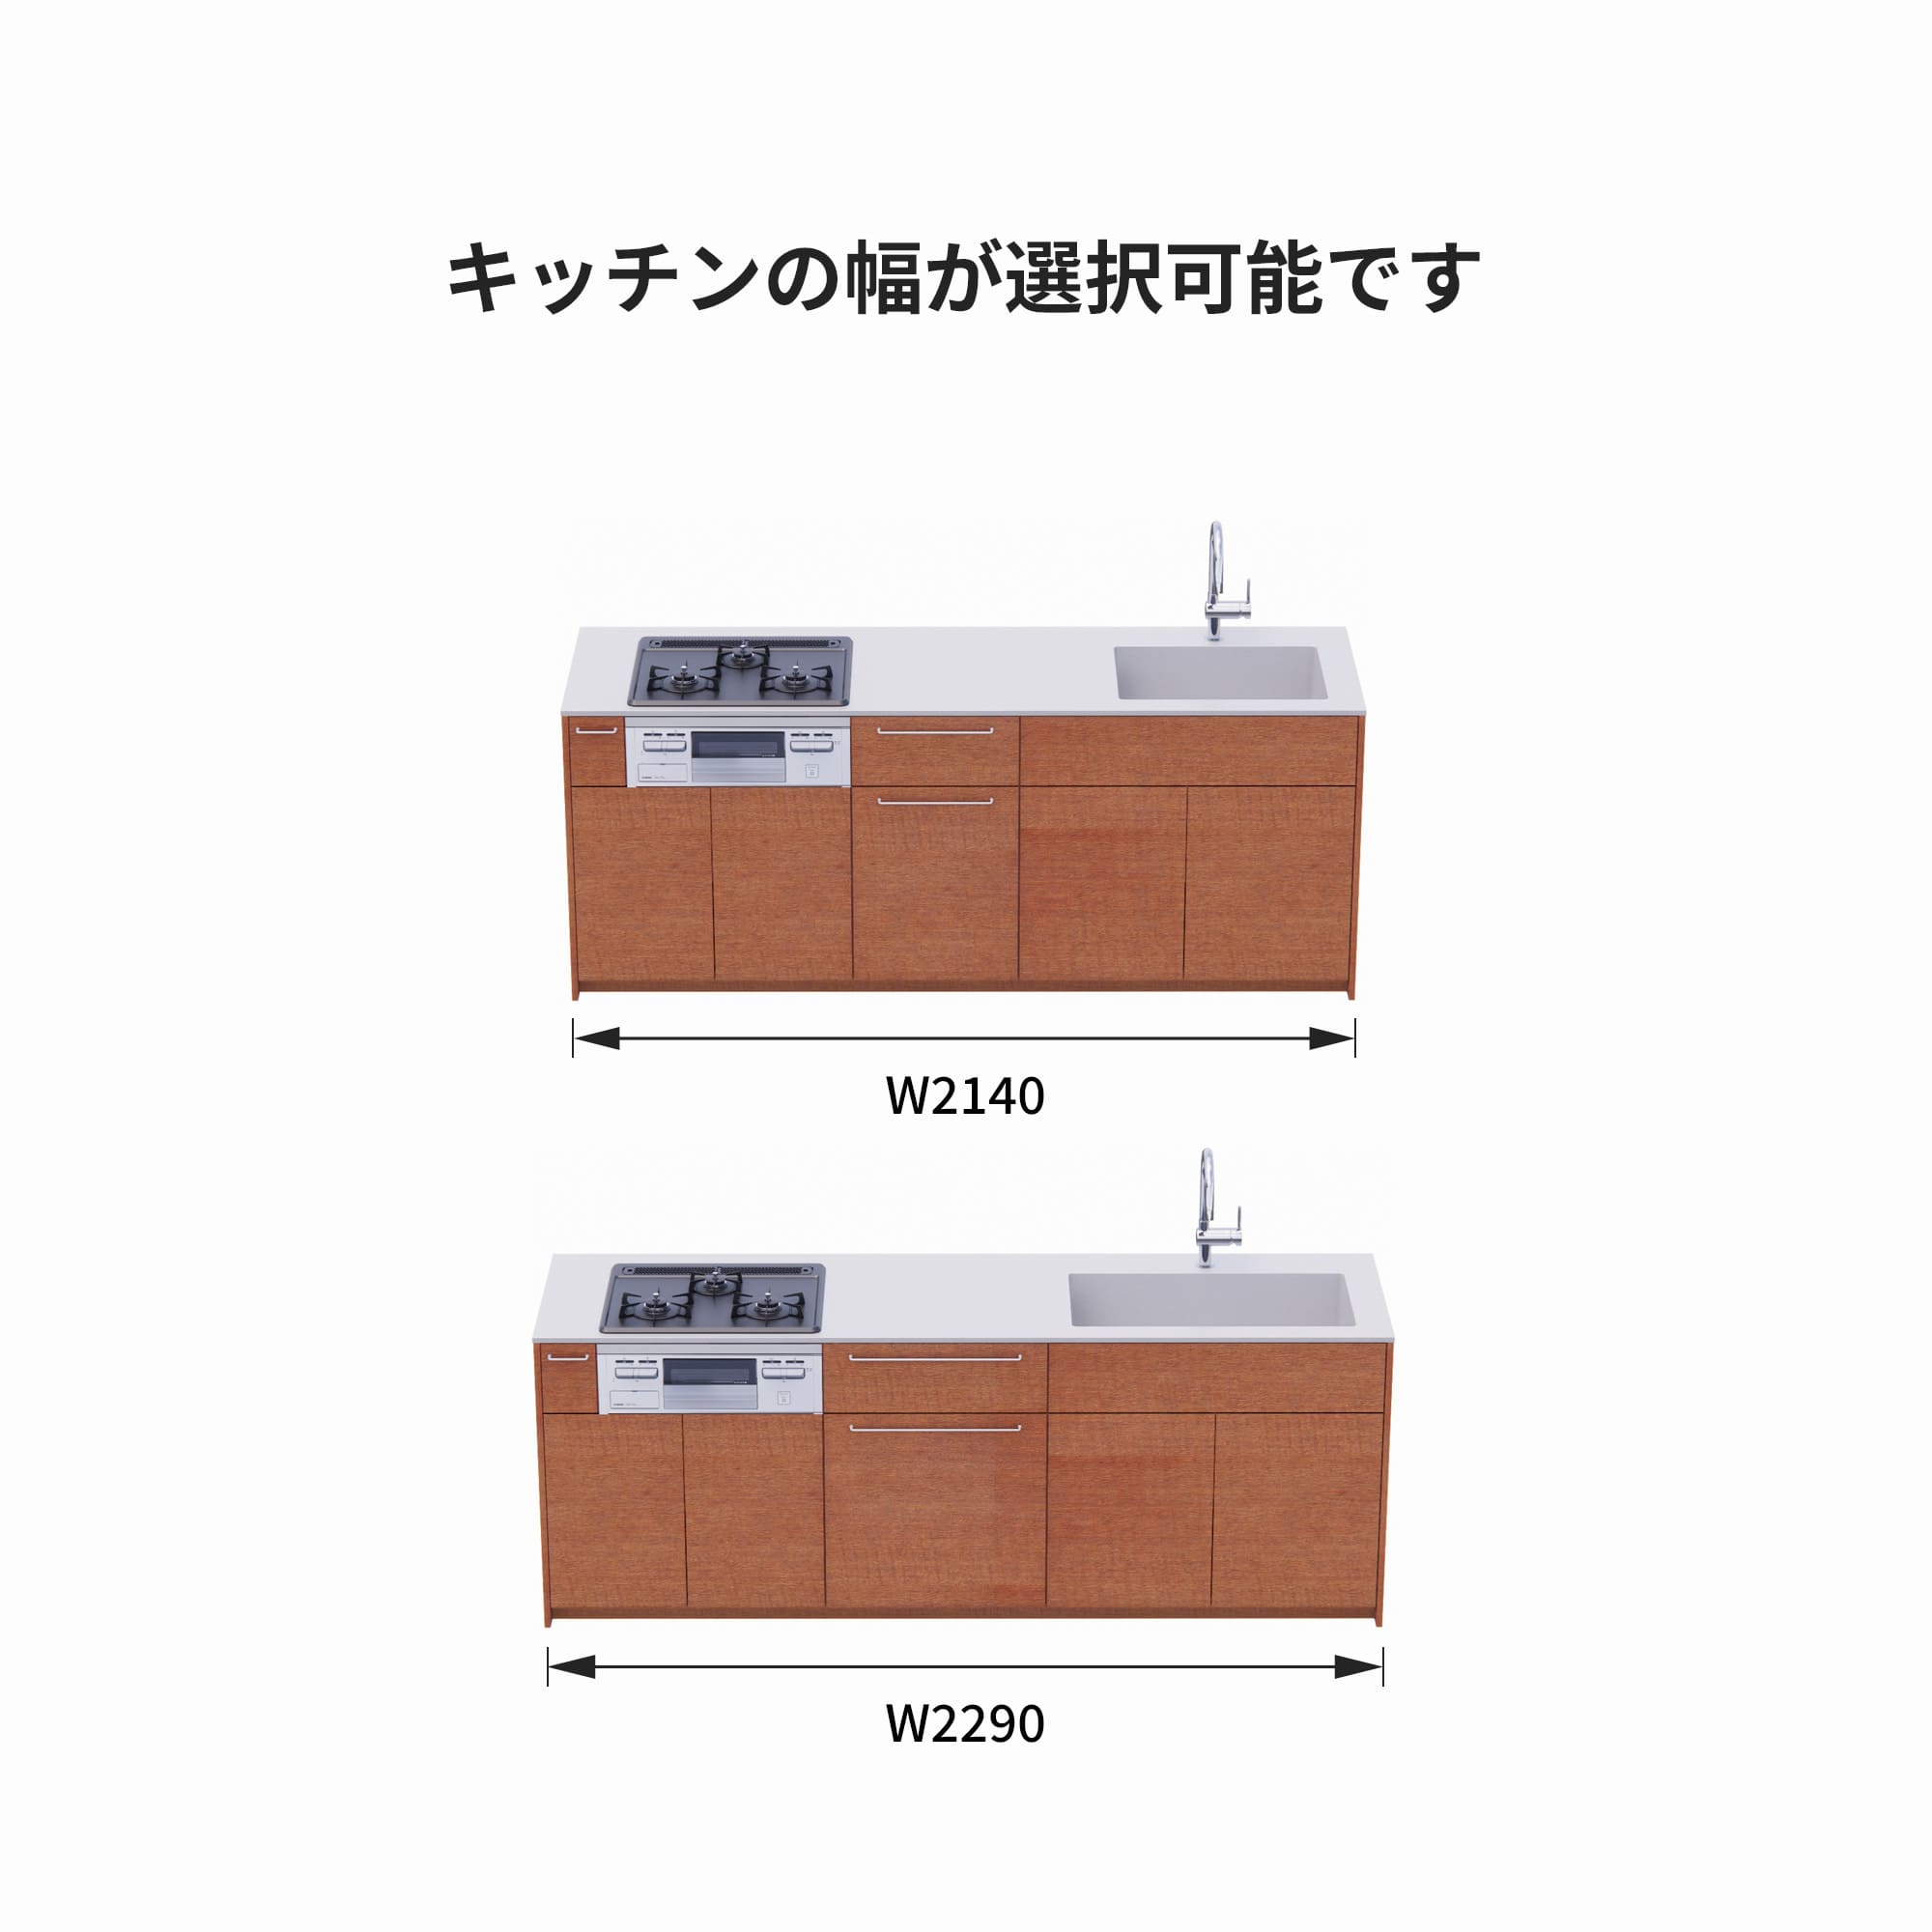 木製システムキッチン 壁付け型 W2140～2290・コンロあり / オーブンなし / 食洗機なし KB-KC022-17-G183 サイズはW2140と2290から選択可能です